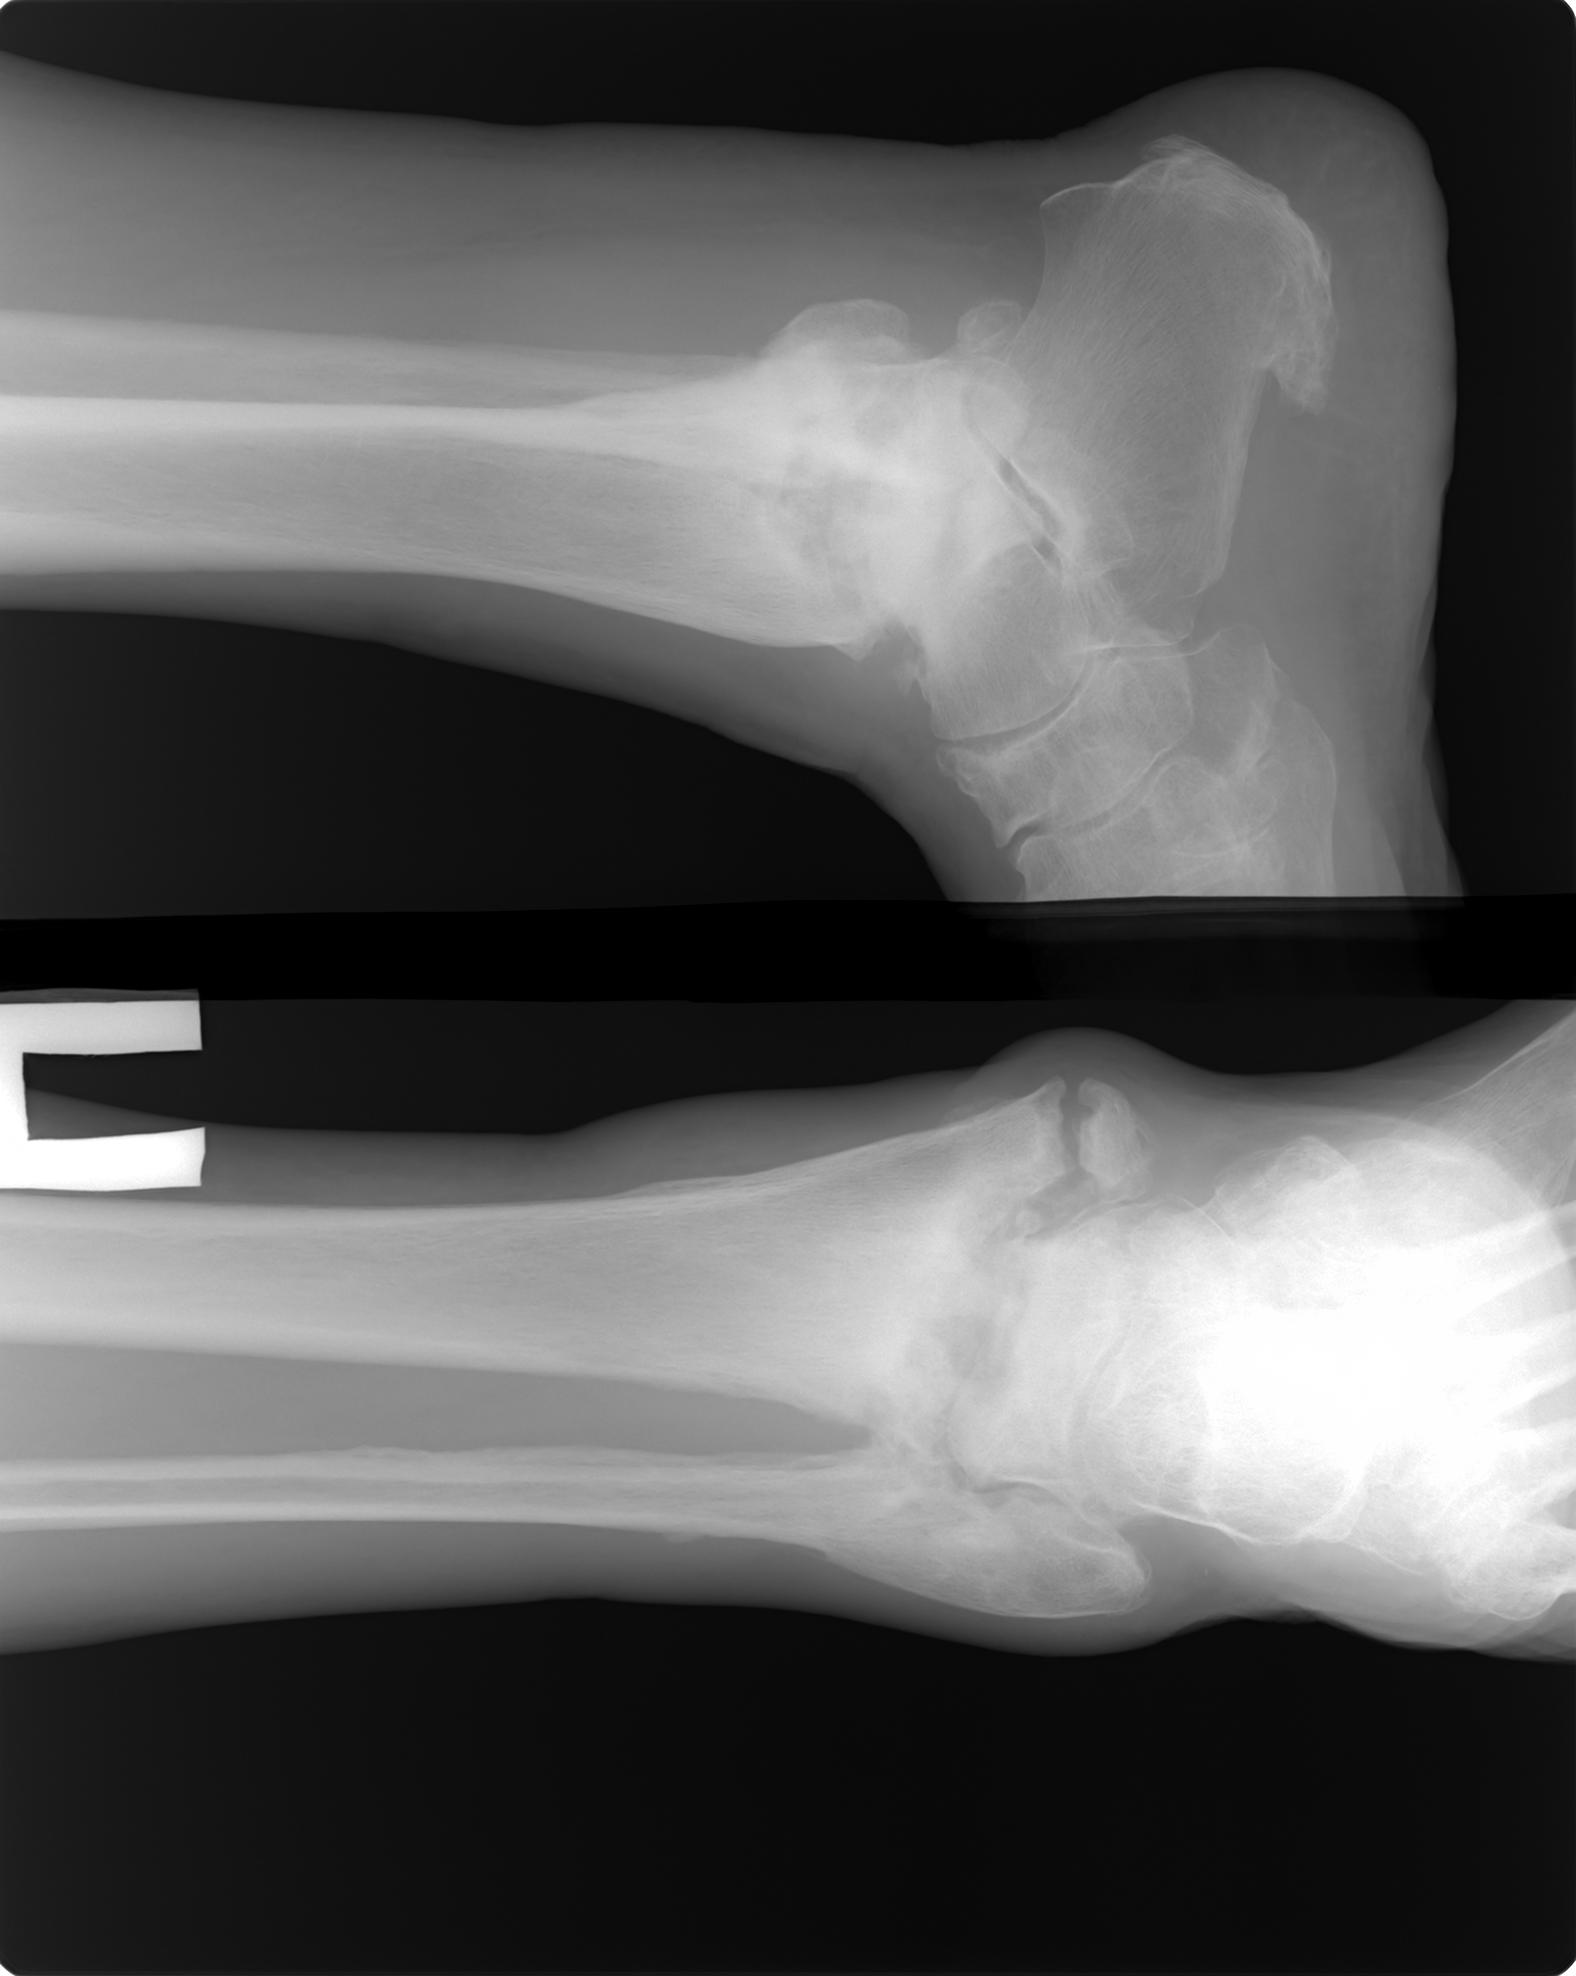 Сколько по времени заживает перелом. Остеомиелит лодыжки рентген. Остеомиелит кости на голеностопный сустав. Остеомиелит костей стопы рентген. Остеомиелит голеностопа рентген.